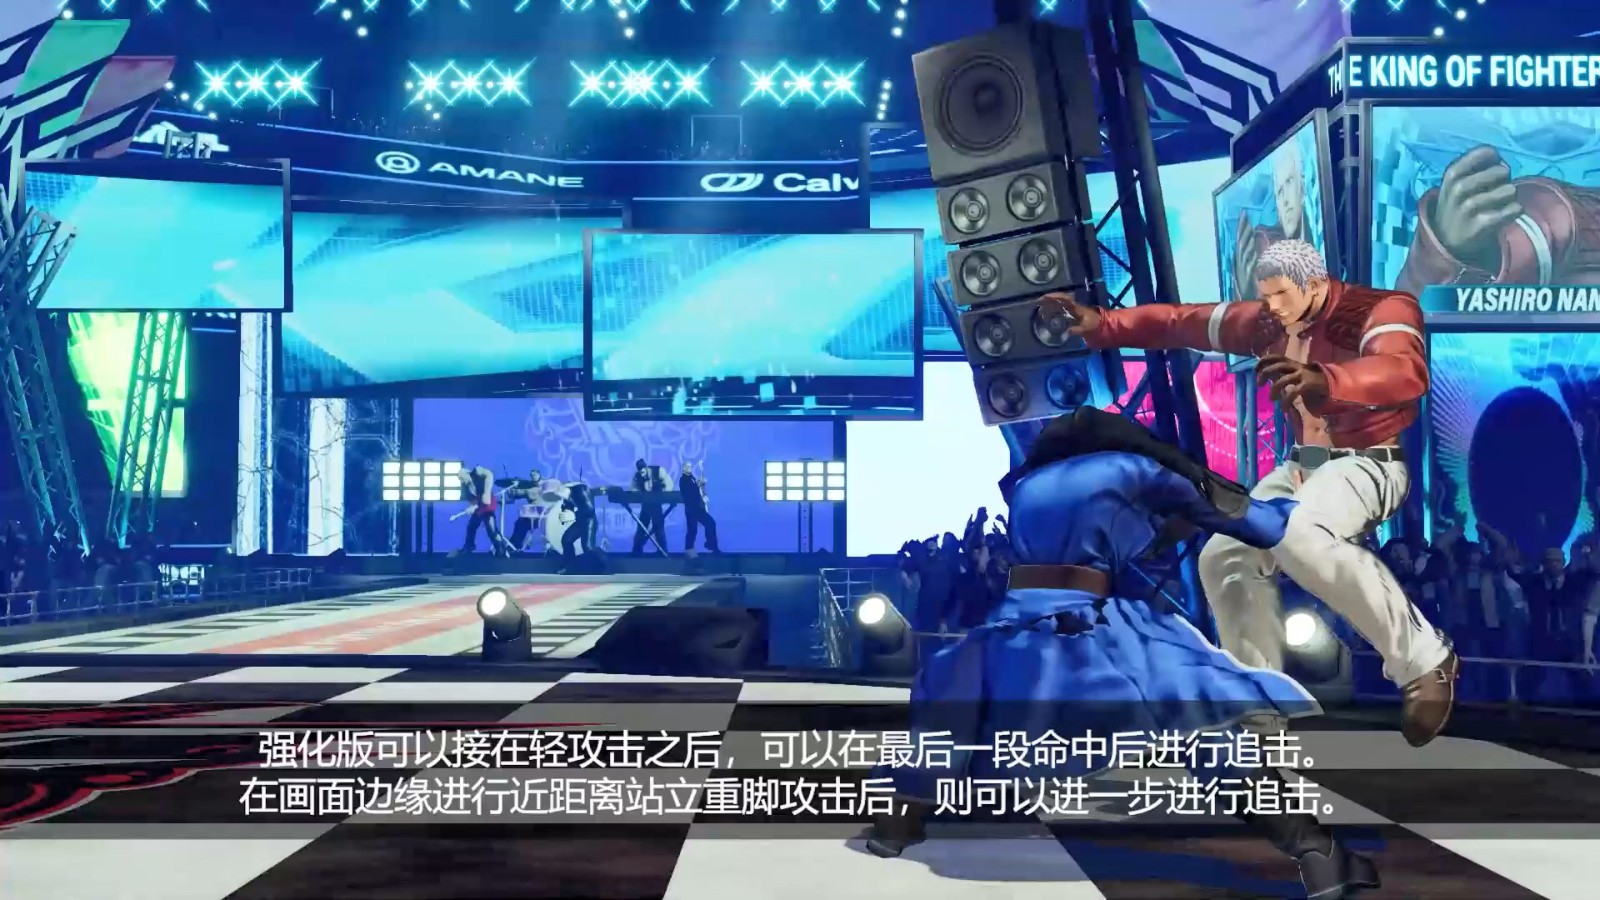 《拳皇15》DLC角色“高尼茨”介紹視頻 6月20日上線